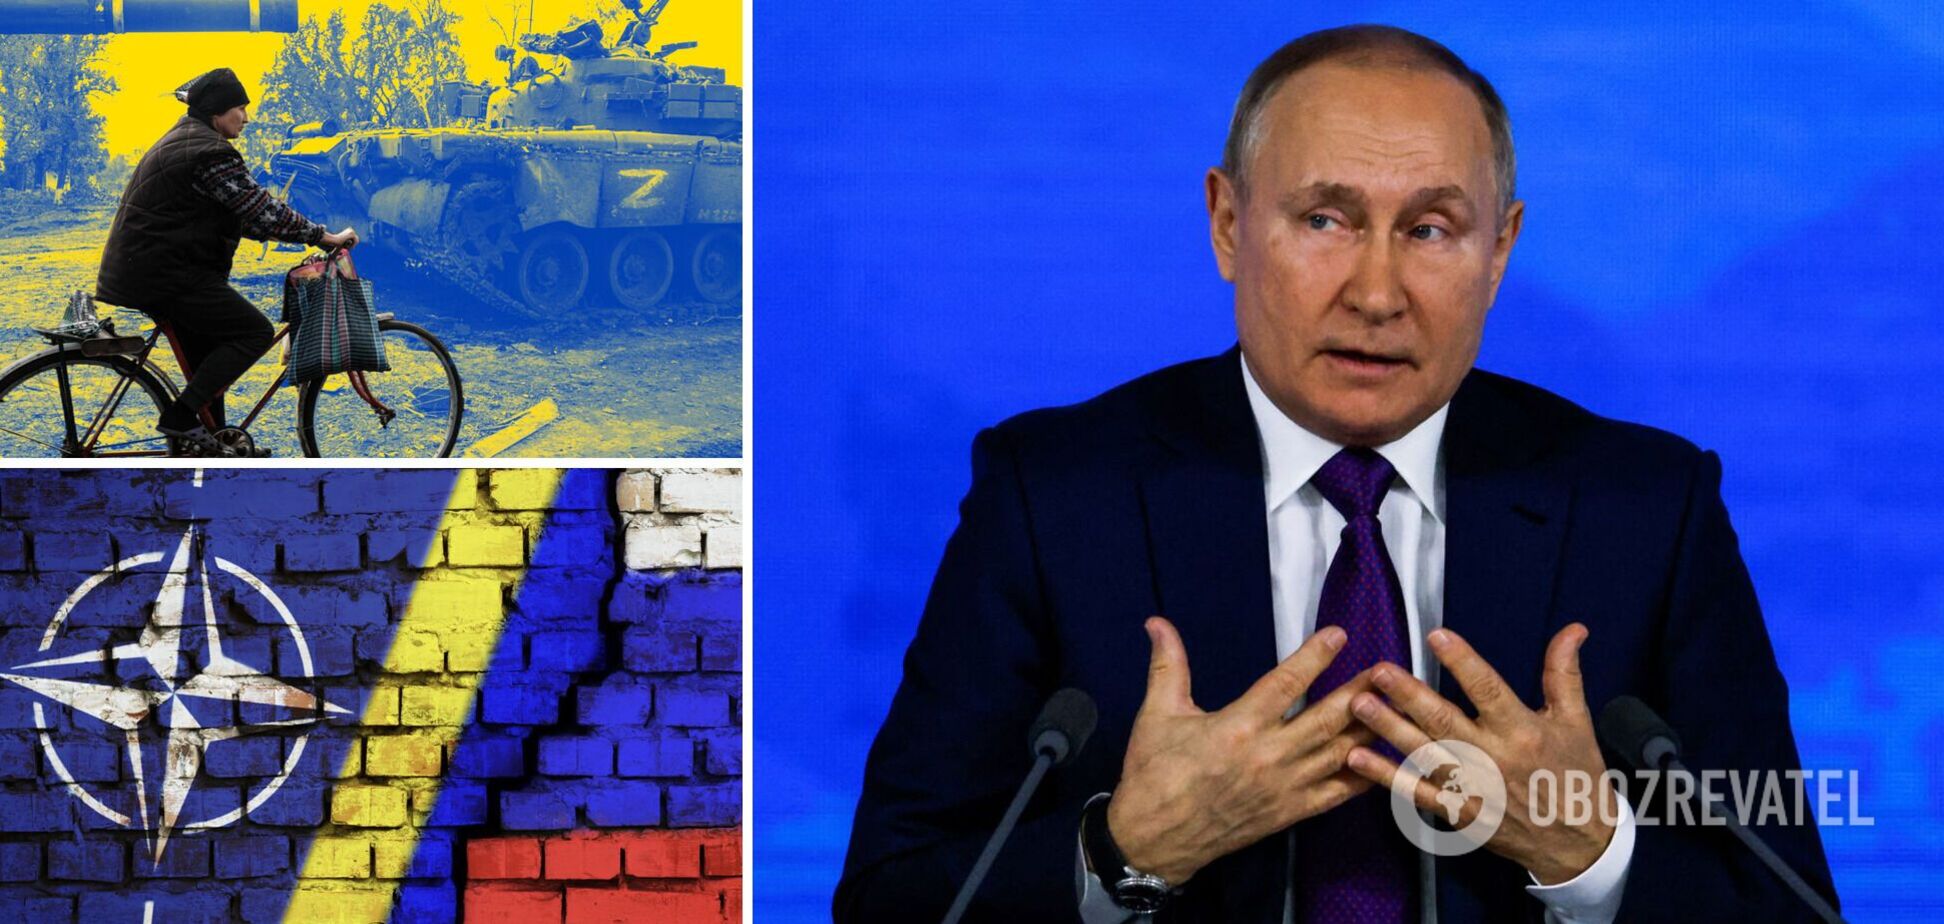 Заговорил о 'неонацистах' и вспомнил Донбасс: Путин в обращении попытался оправдать войну против Украины и обвинил во всем Запад